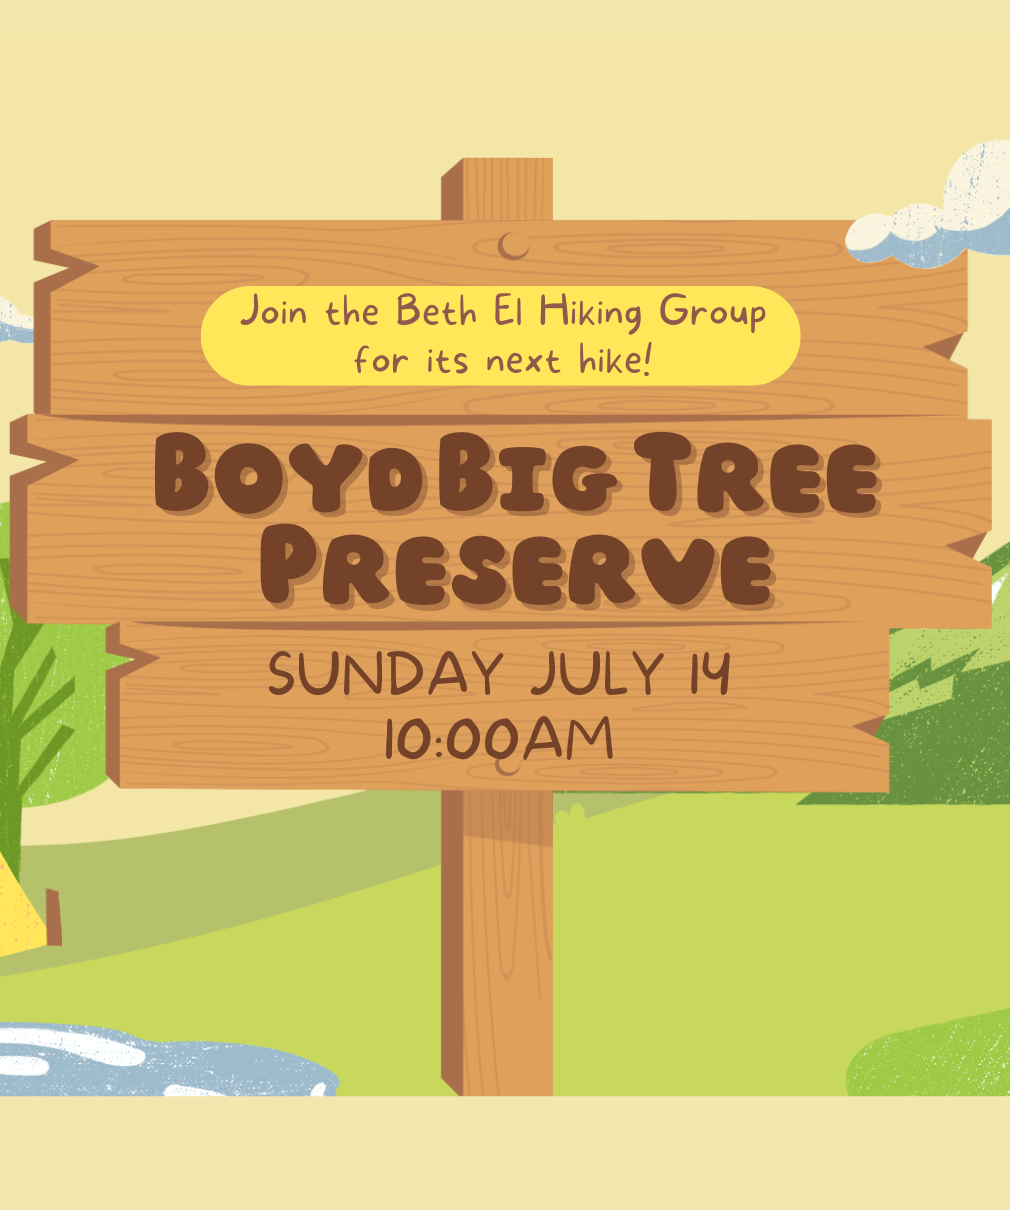 Hiking Group: Boyd Big Tree Preserve Hike